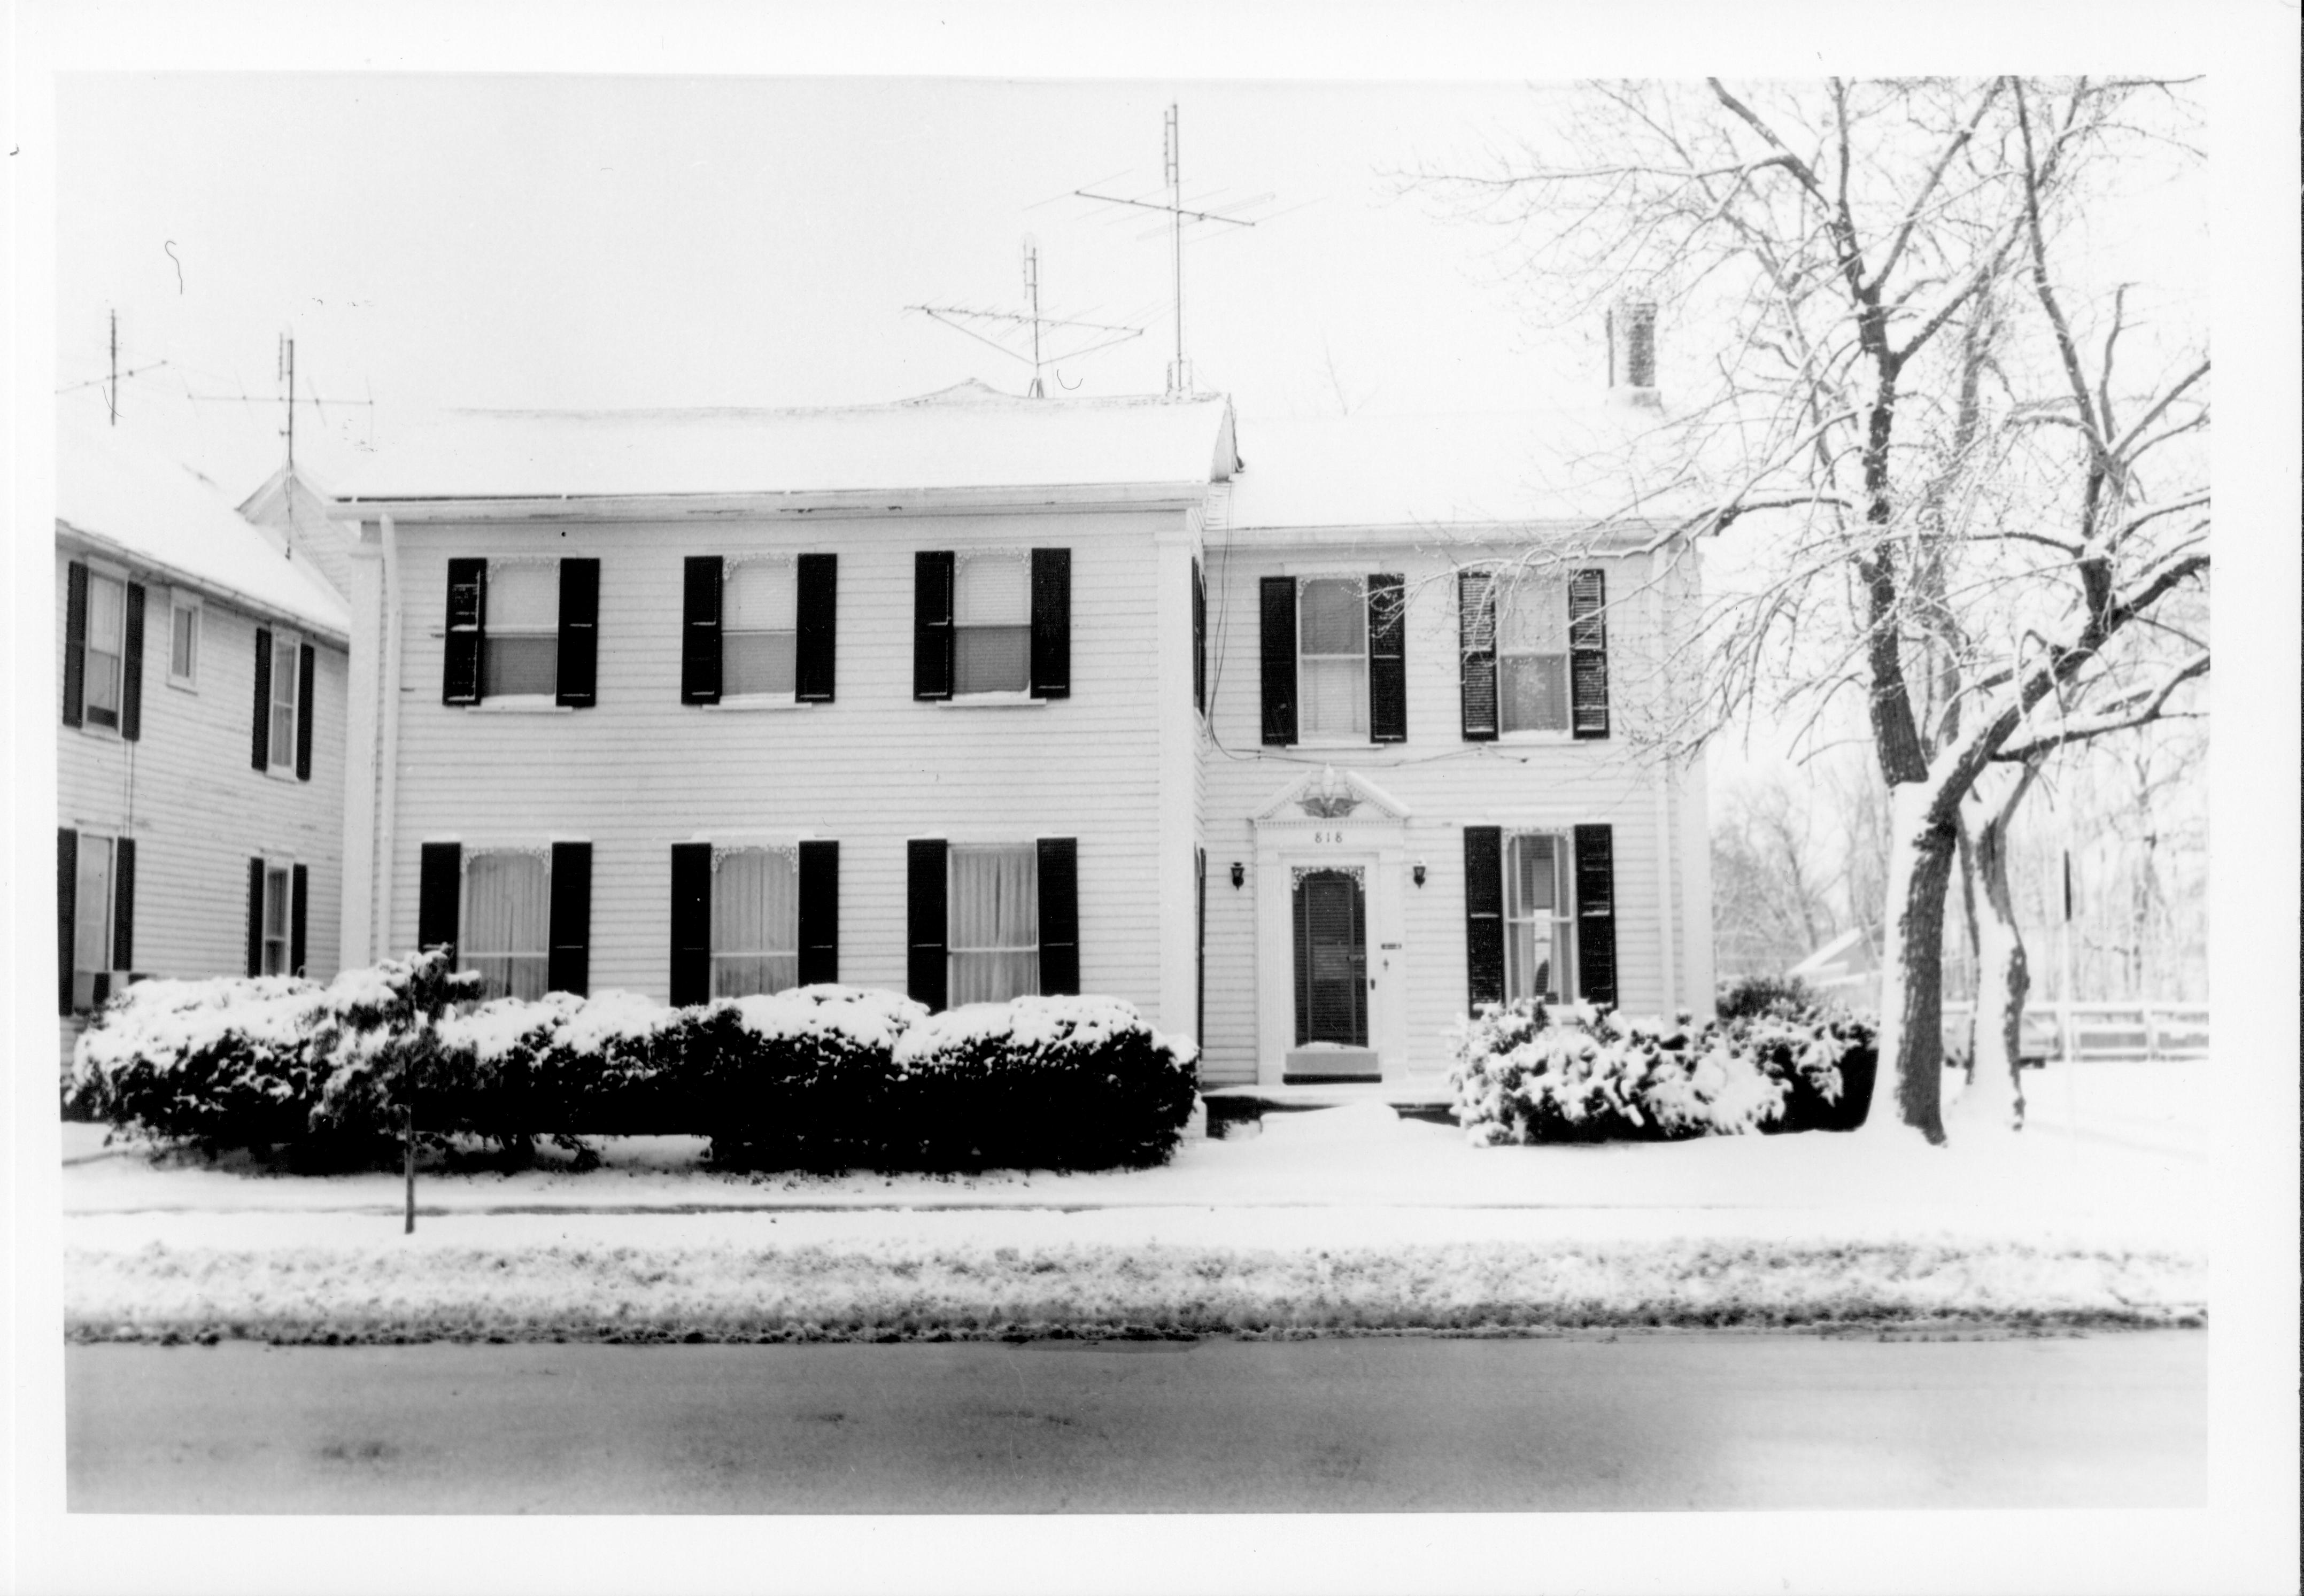 Morse House Class#1, Pic#1 Morse House, Exterior, Snow